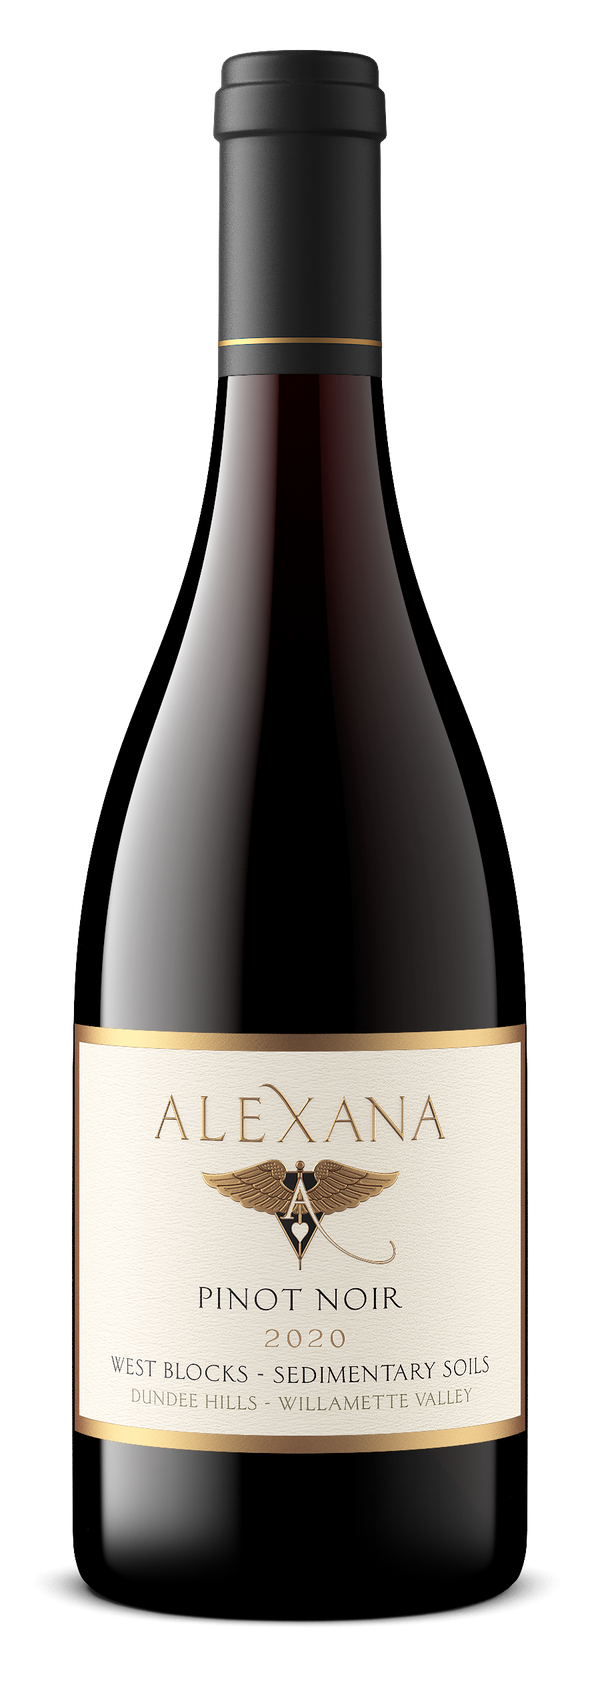 Alexana, West Blocks Marine Soils, Pinot Noir, Dundee Hills, 2020